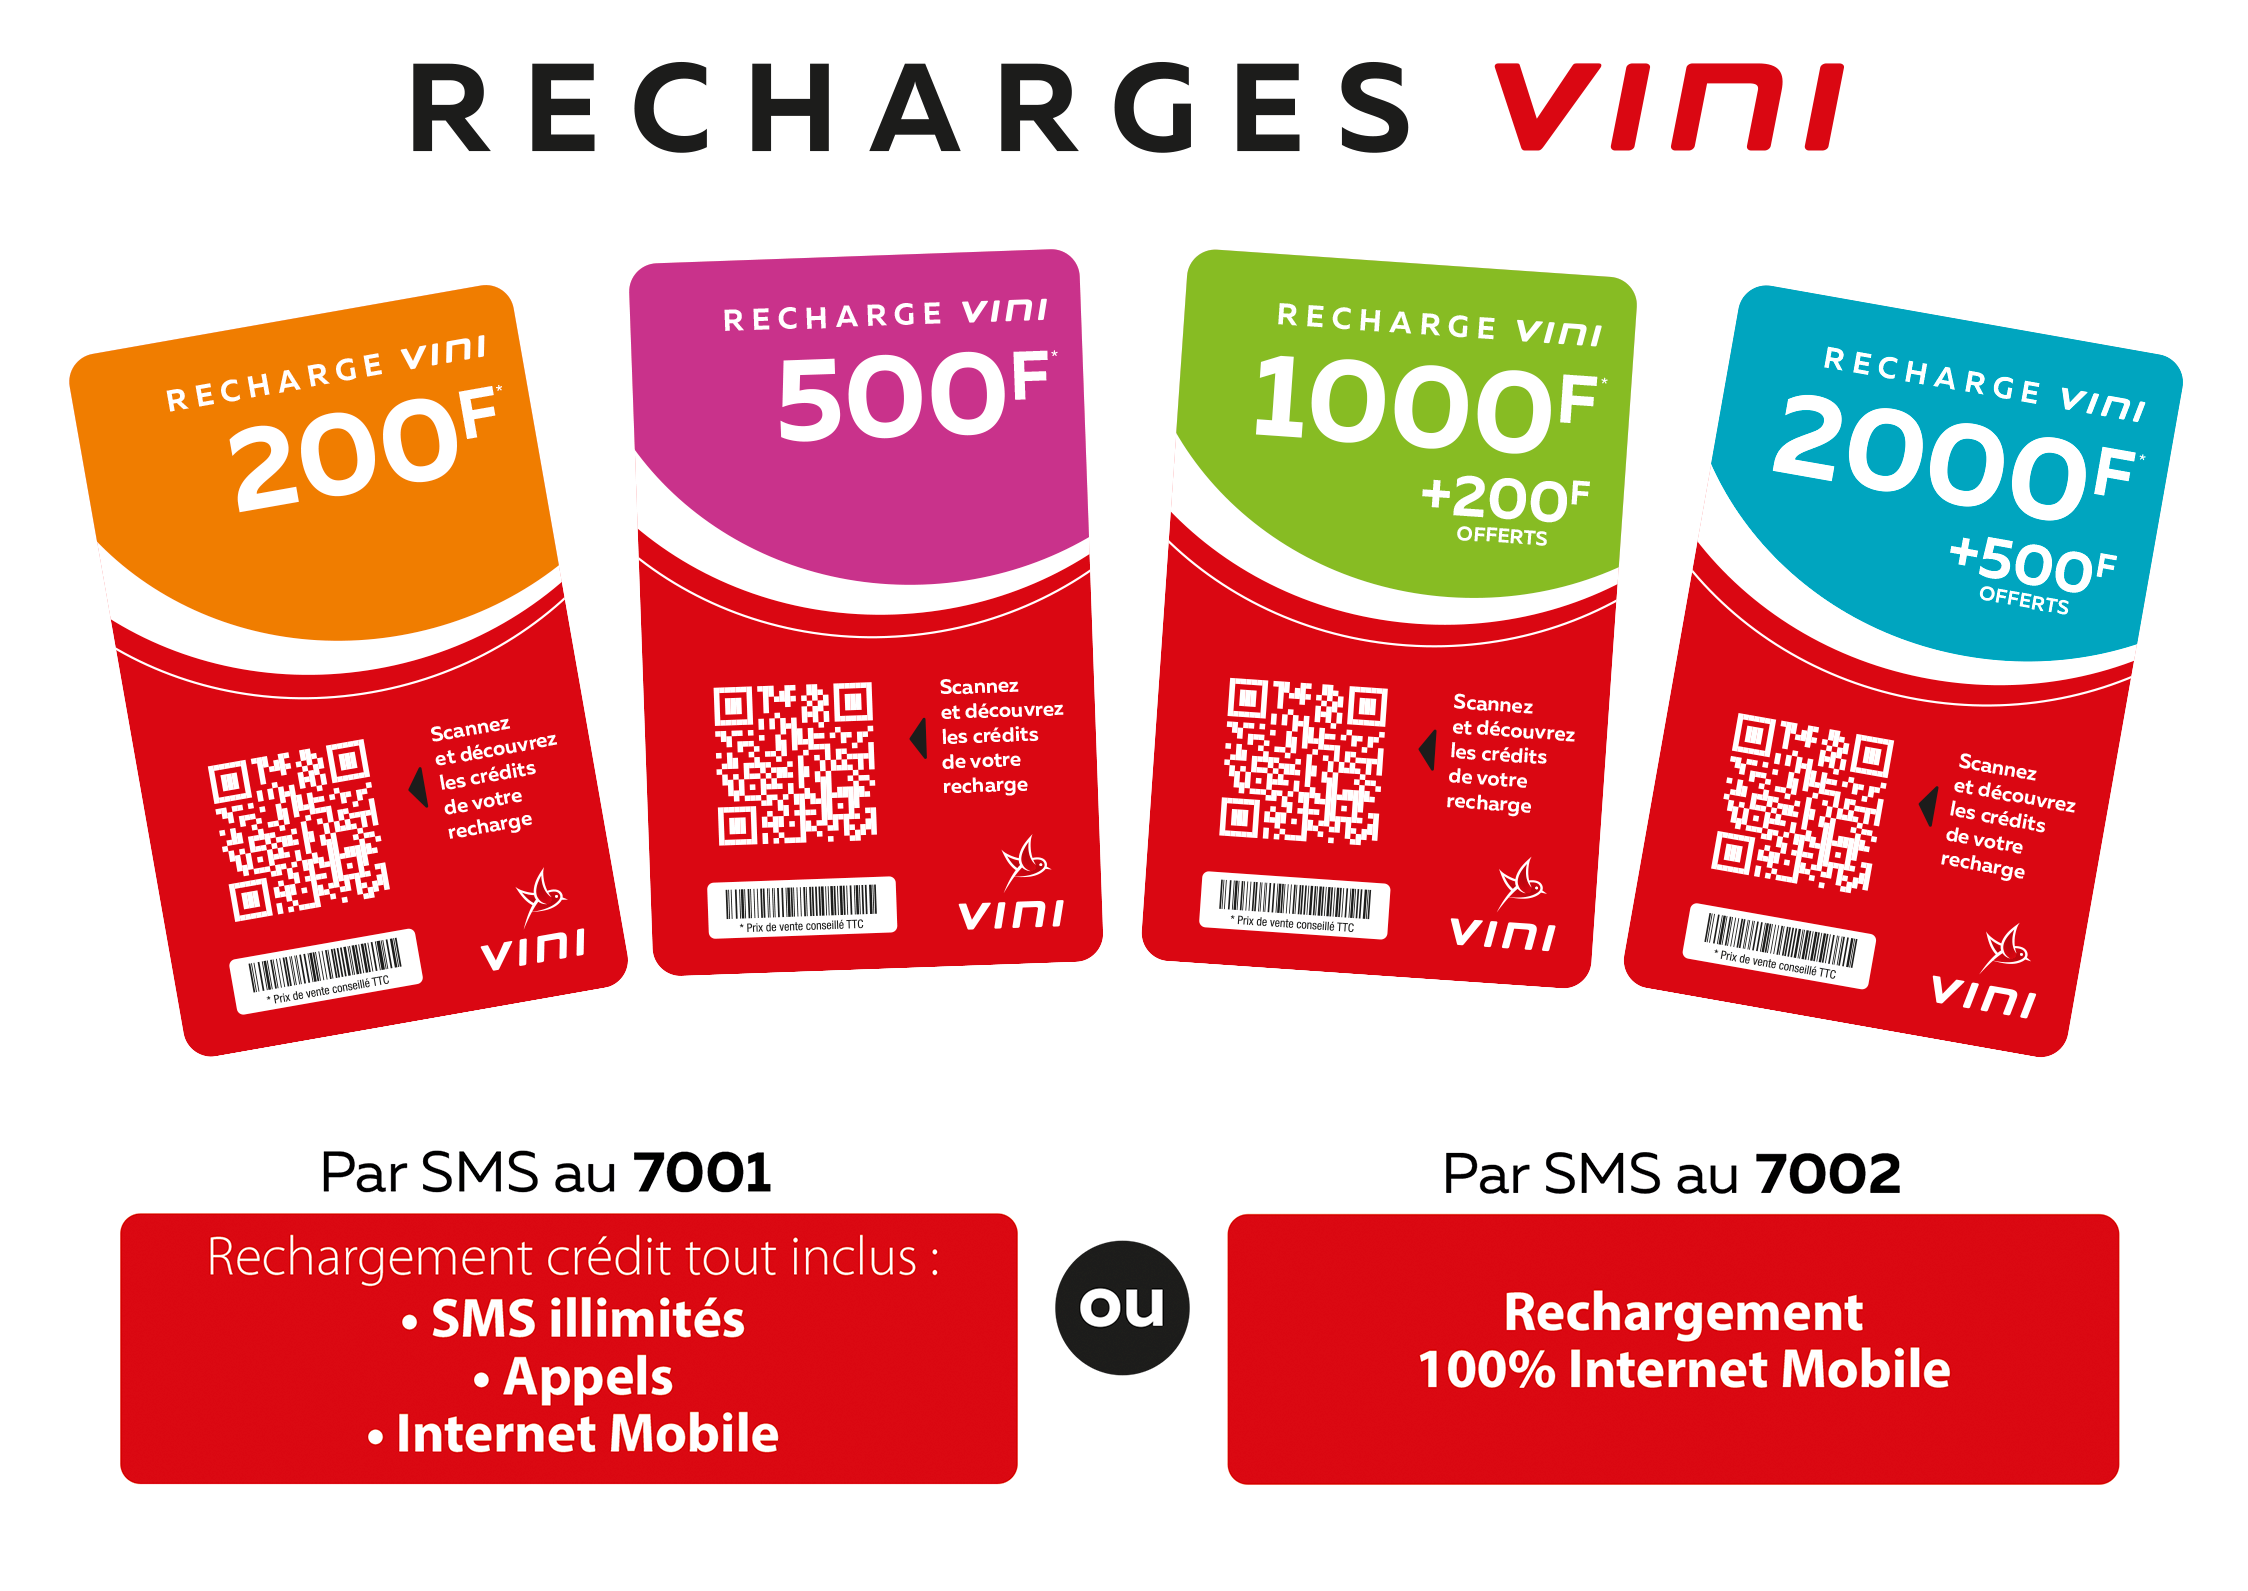 Recharge La Poste Mobile France en ligne: crédit, internet et forfait